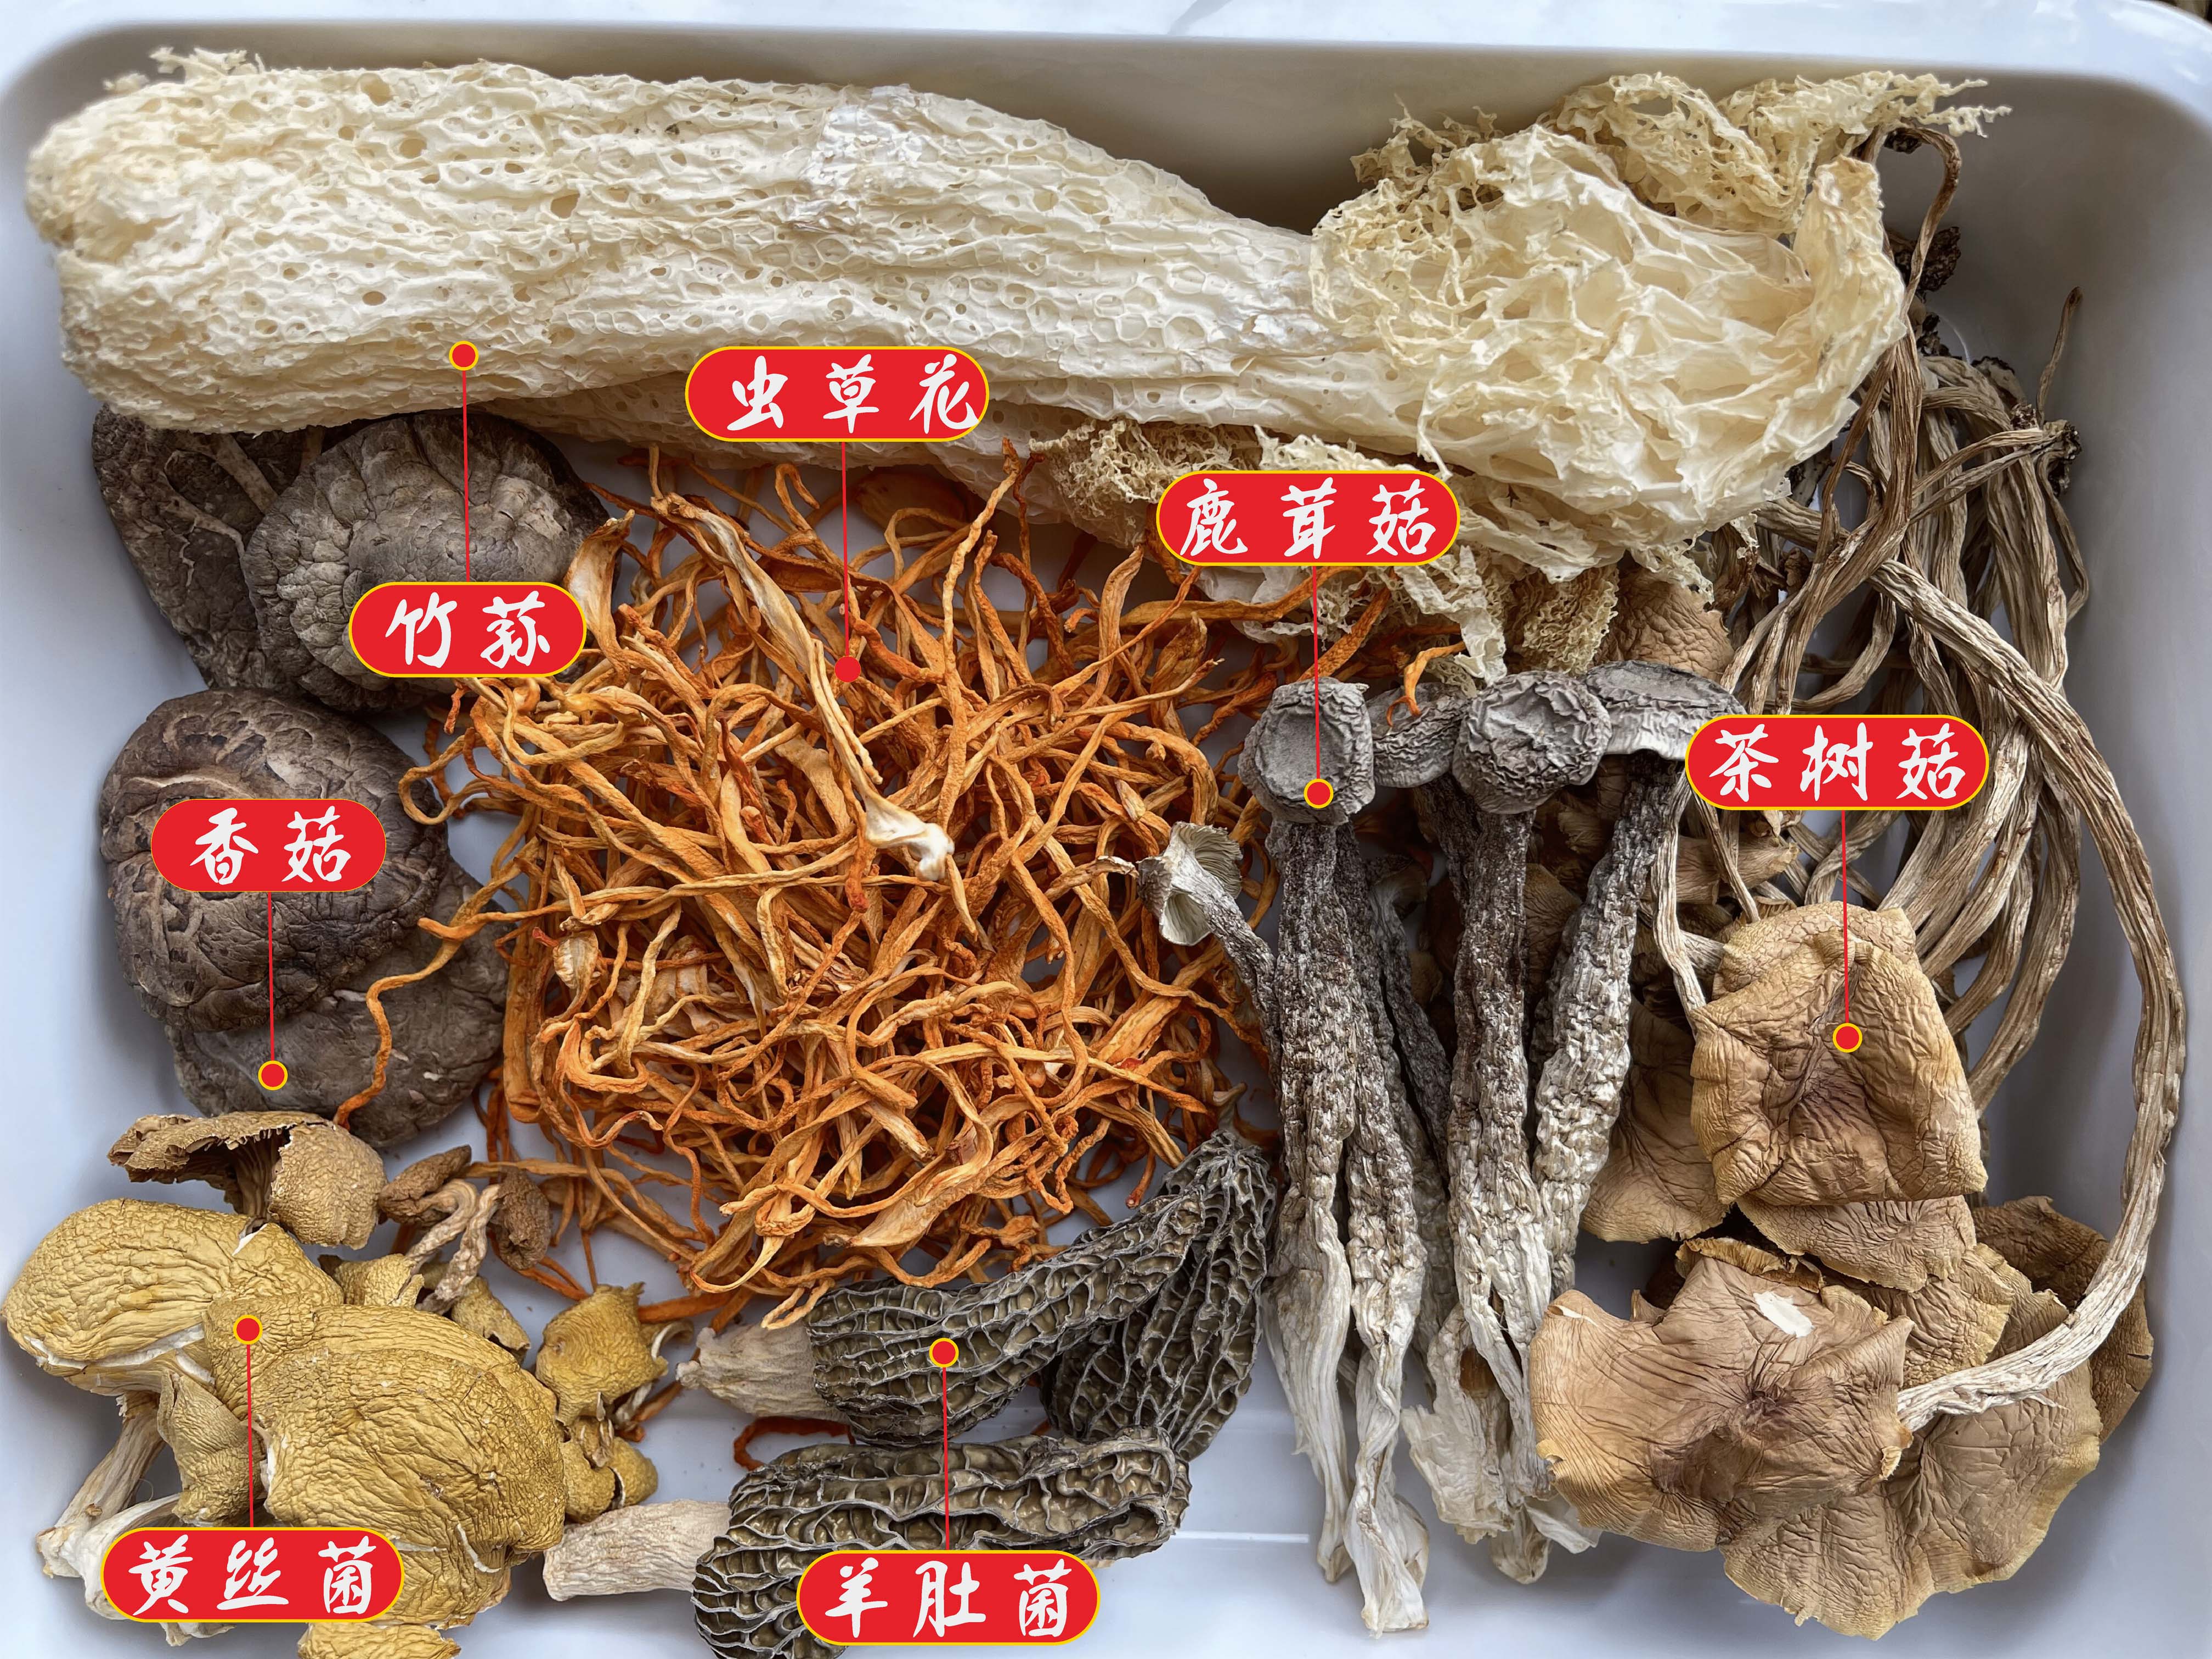 羊肚菌竹荪菌菇汤包七种菌菇七珍汤包煲汤70克煲汤